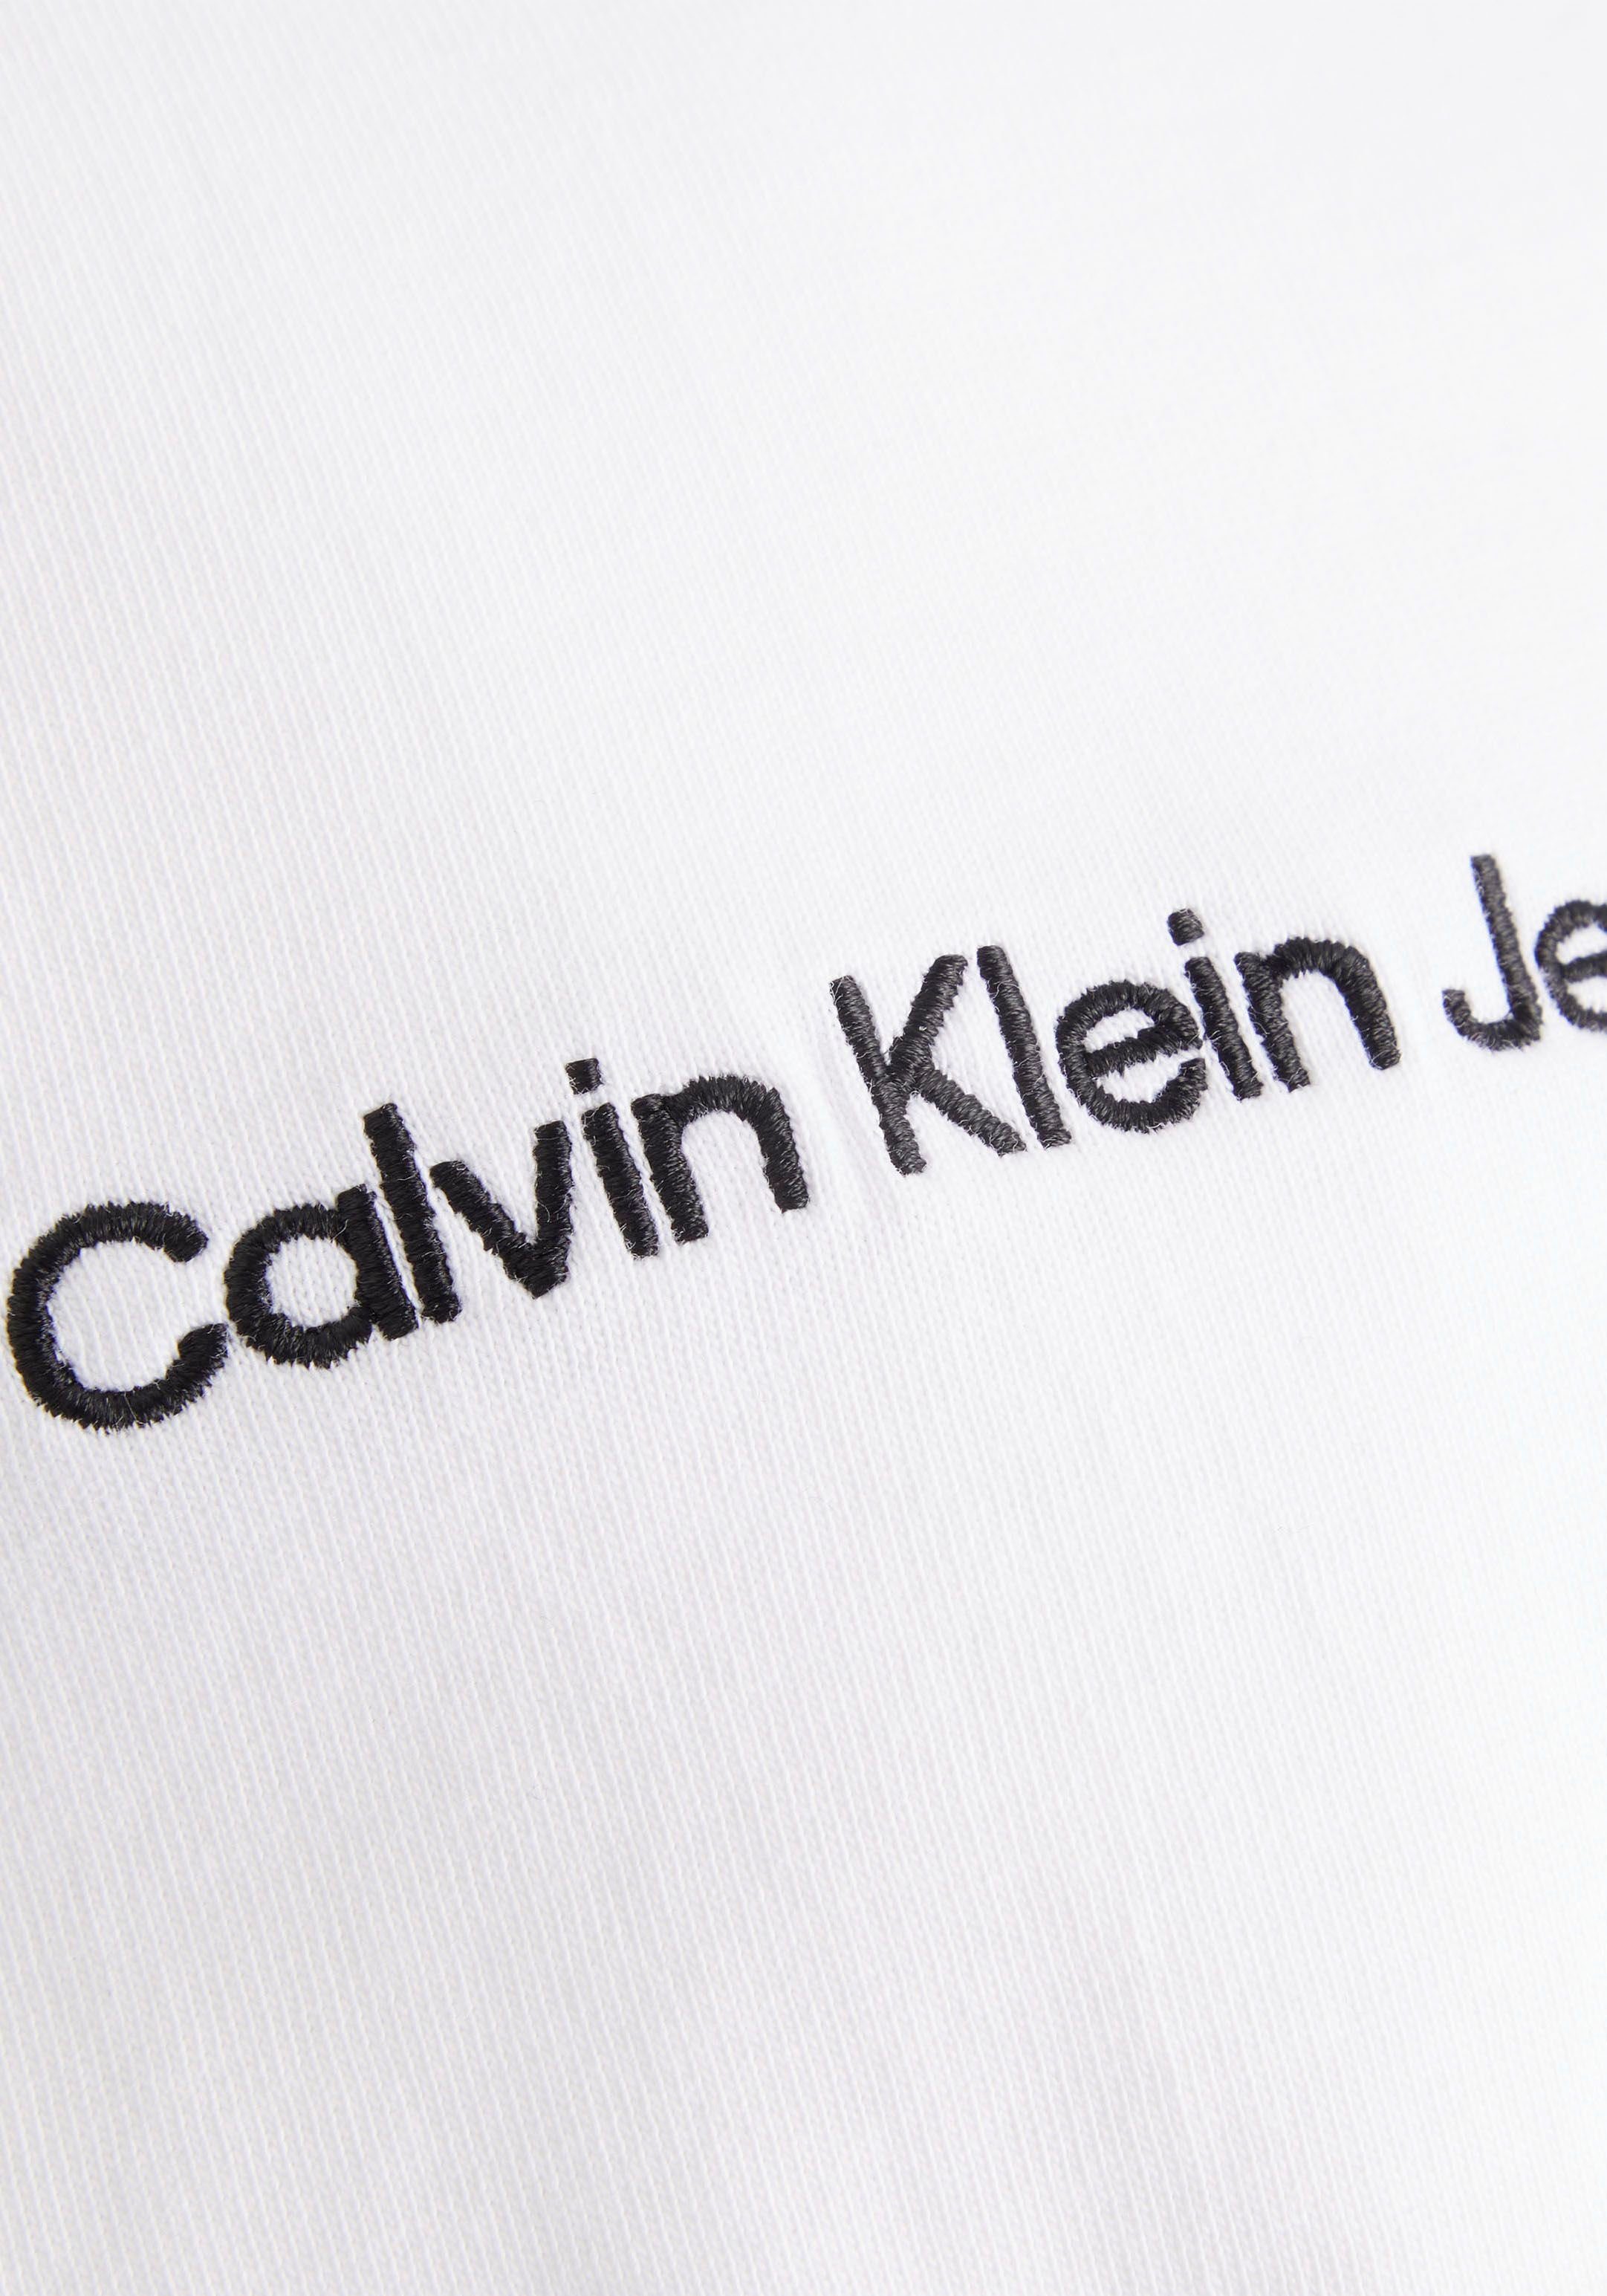 Calvin Klein Jeans T-Shirt in Oversized-Passform weiß